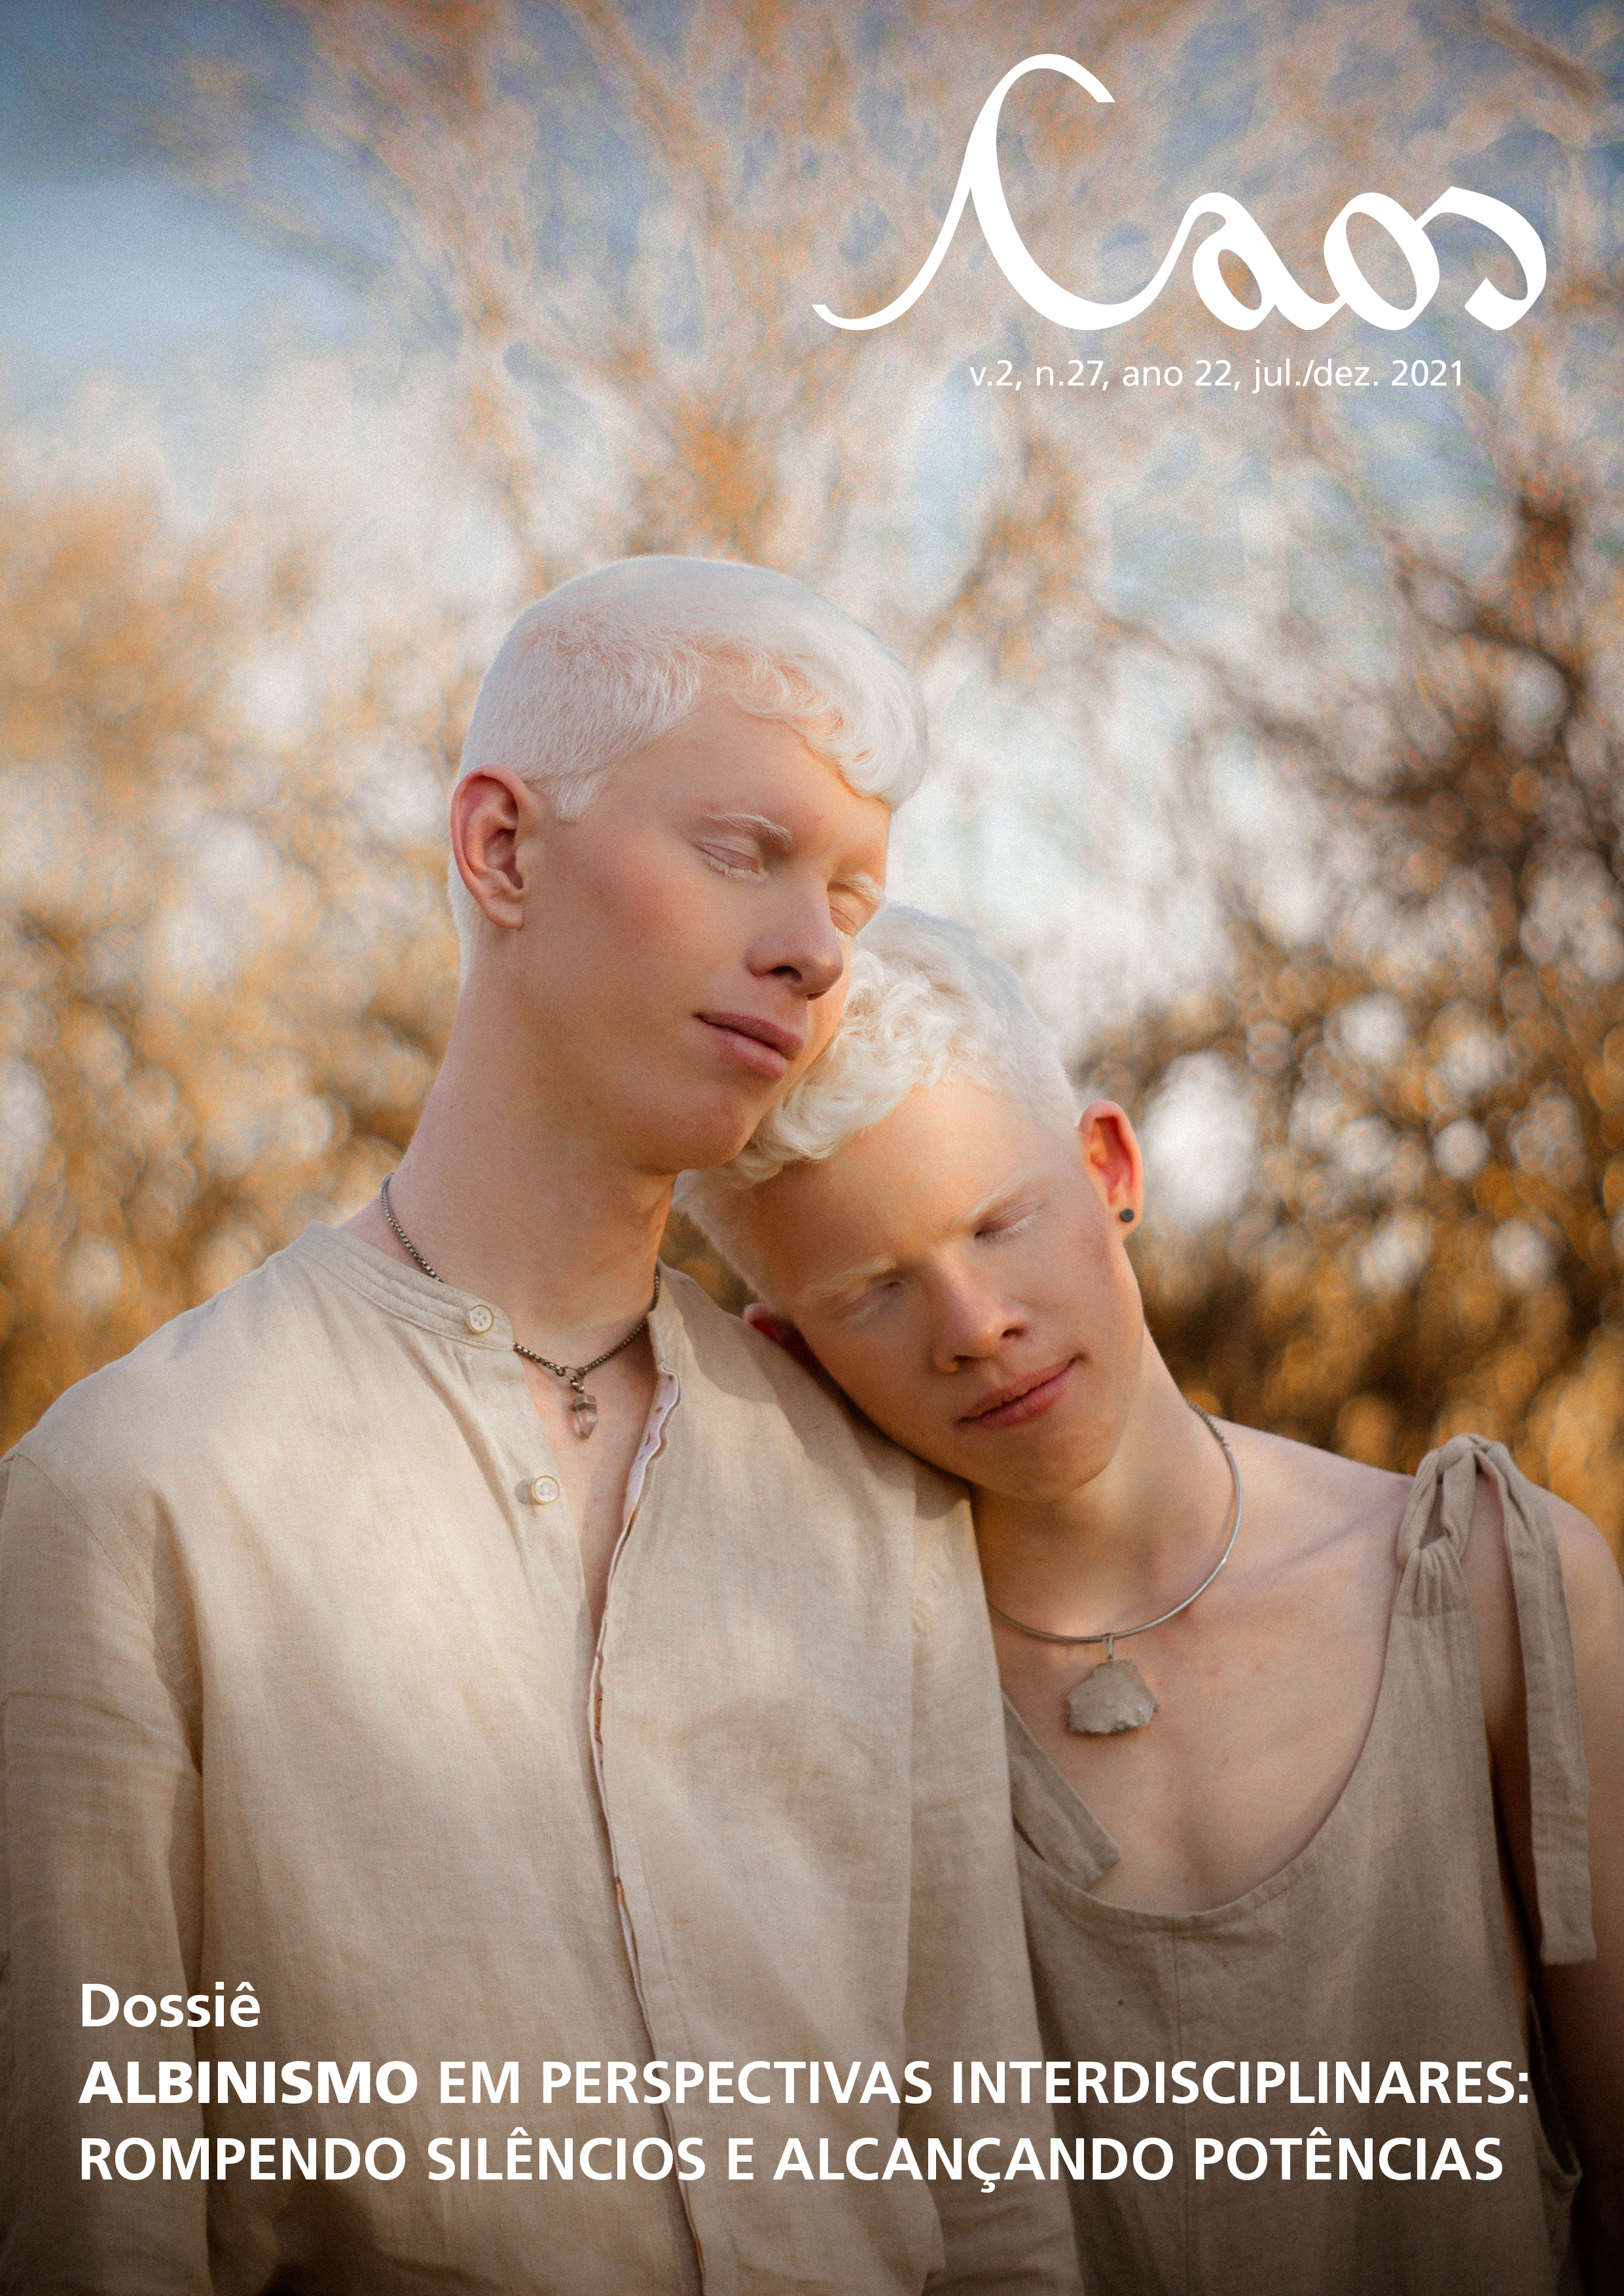 					View Vol. 2 No. 27: Dossiê albinismo em perspectivas interdisciplinares: rompendo silêncios e alcançando potências – jul./dez. 2021
				